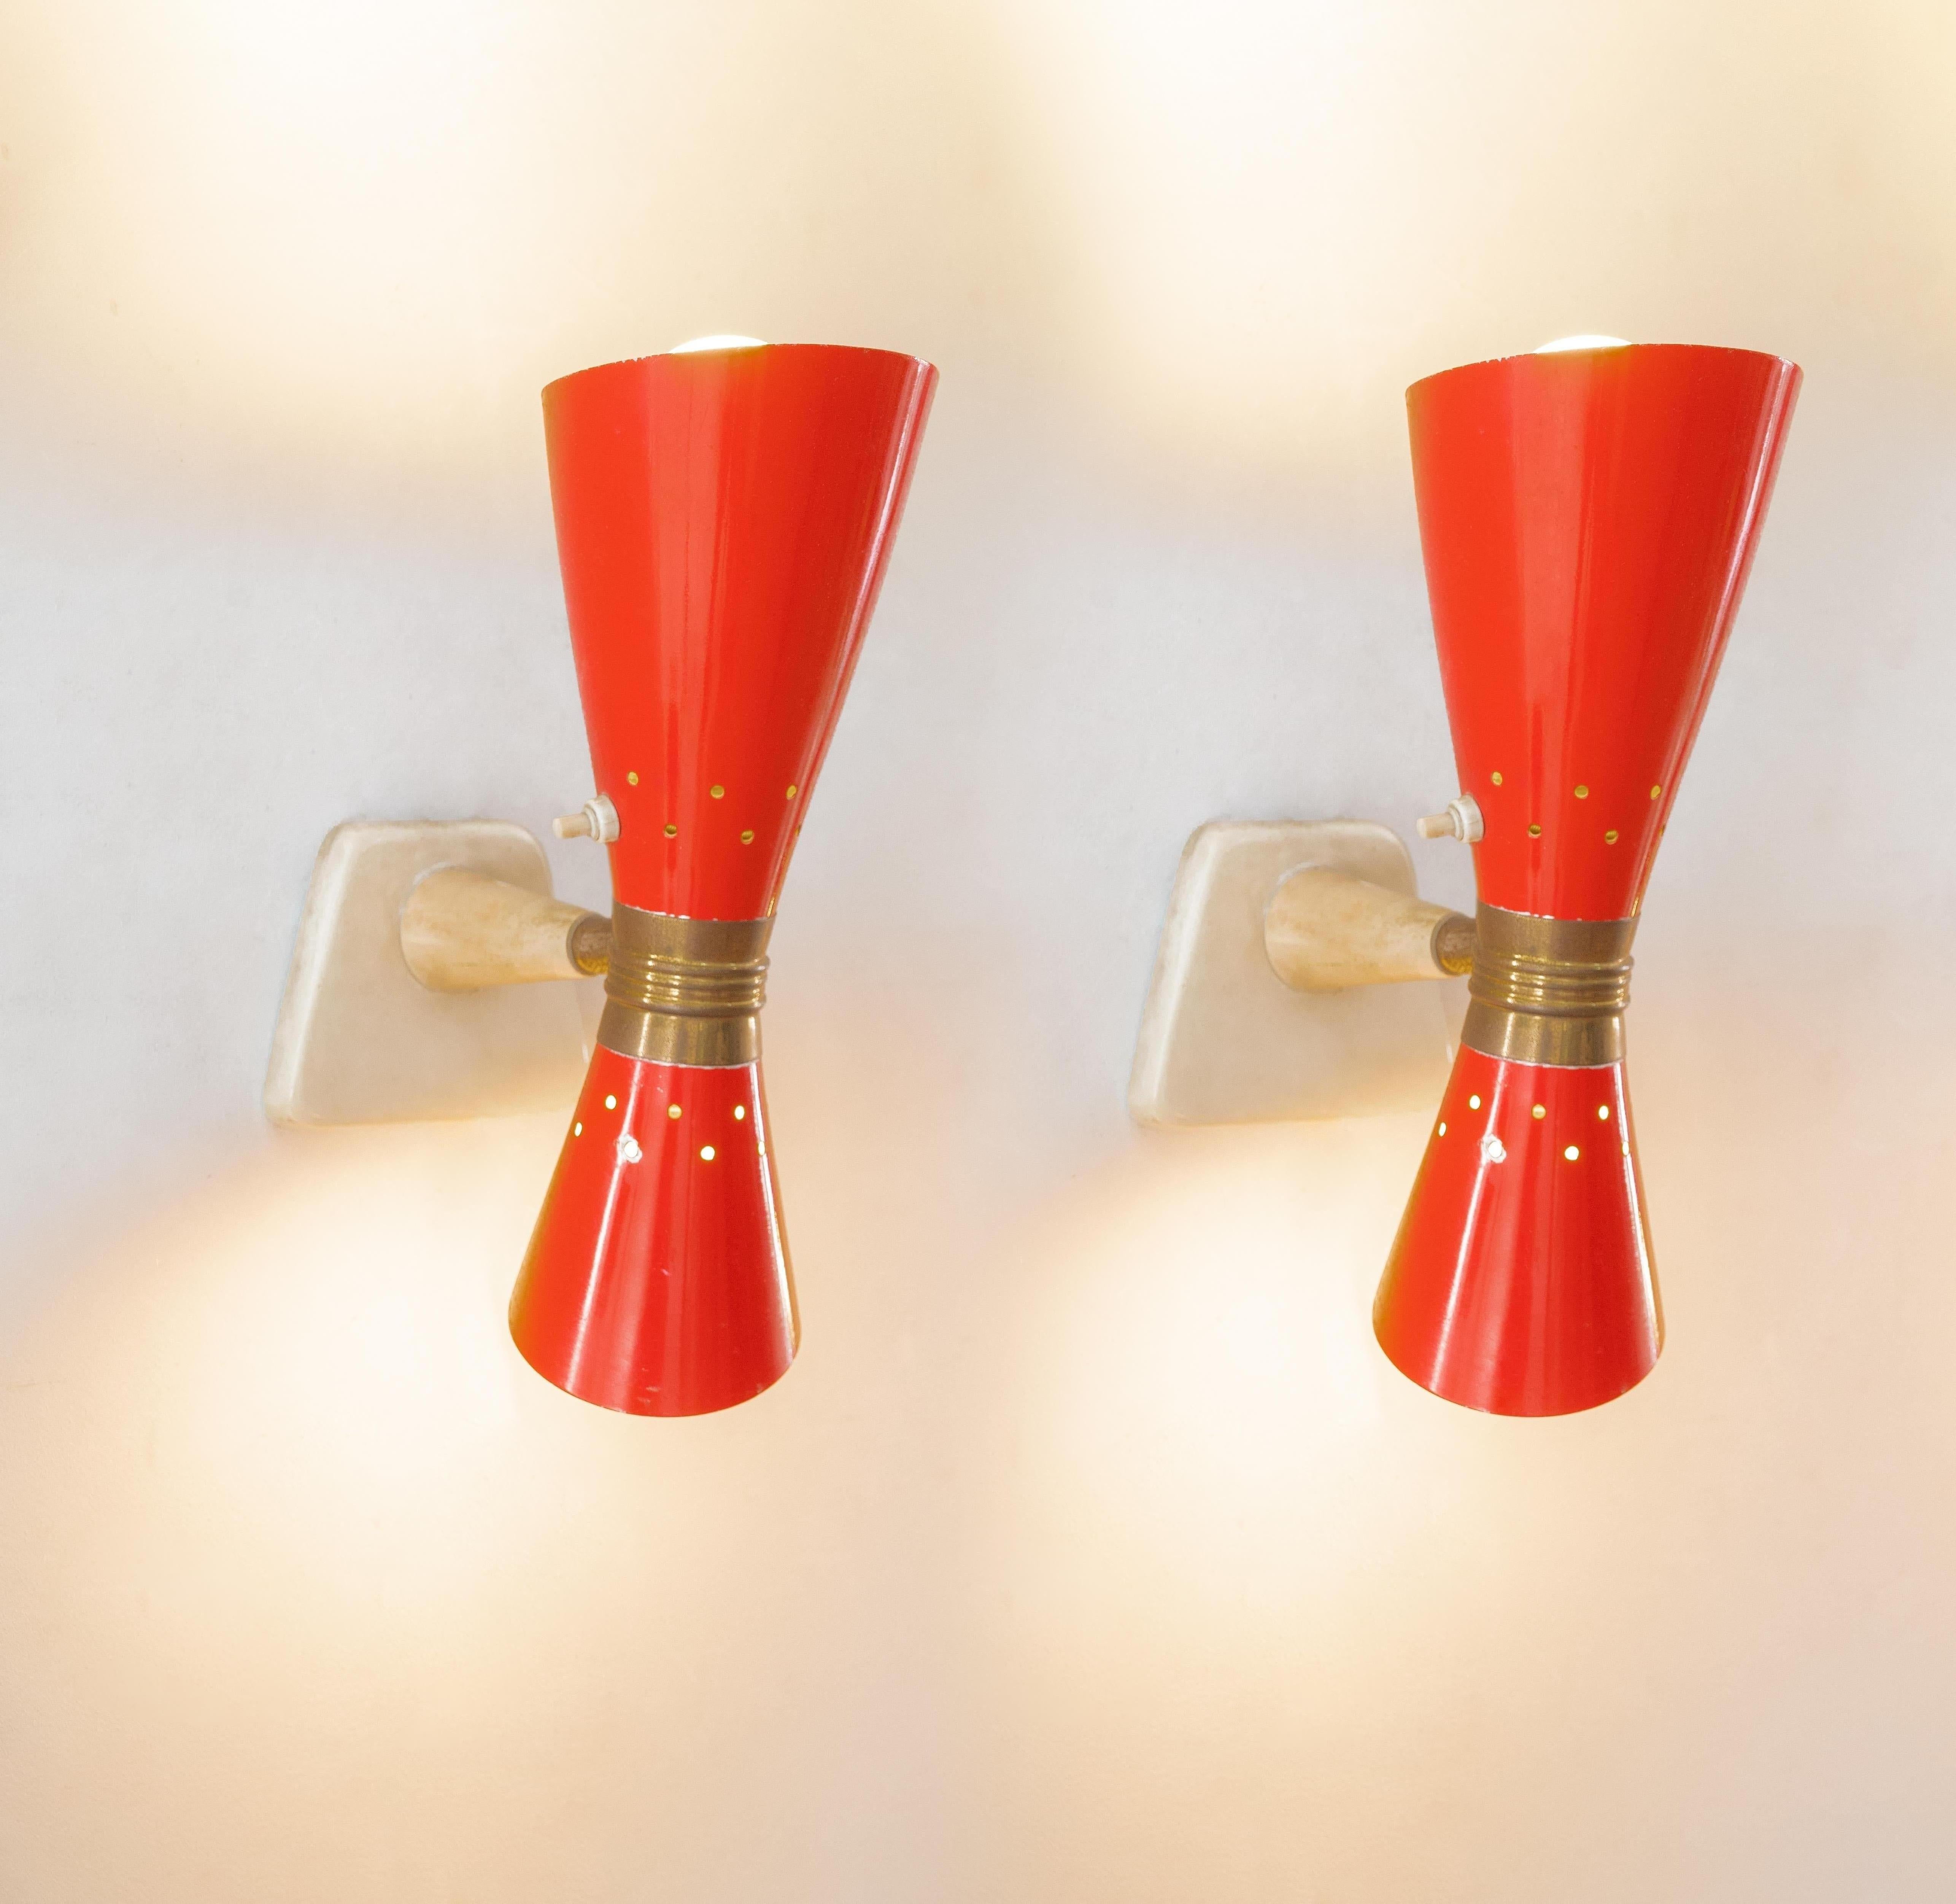 Gilardi & Barzaghi für stilnovo . Produktion Italien ca. 1950
Paar zweiflammige Wandlampen, Korpus
lackiertes Metall bikonisch.
Drehung um 360 Grad  den bikonischen Kegel können Sie das Licht nach Belieben steuern
rot, Messing. Wucherungen der